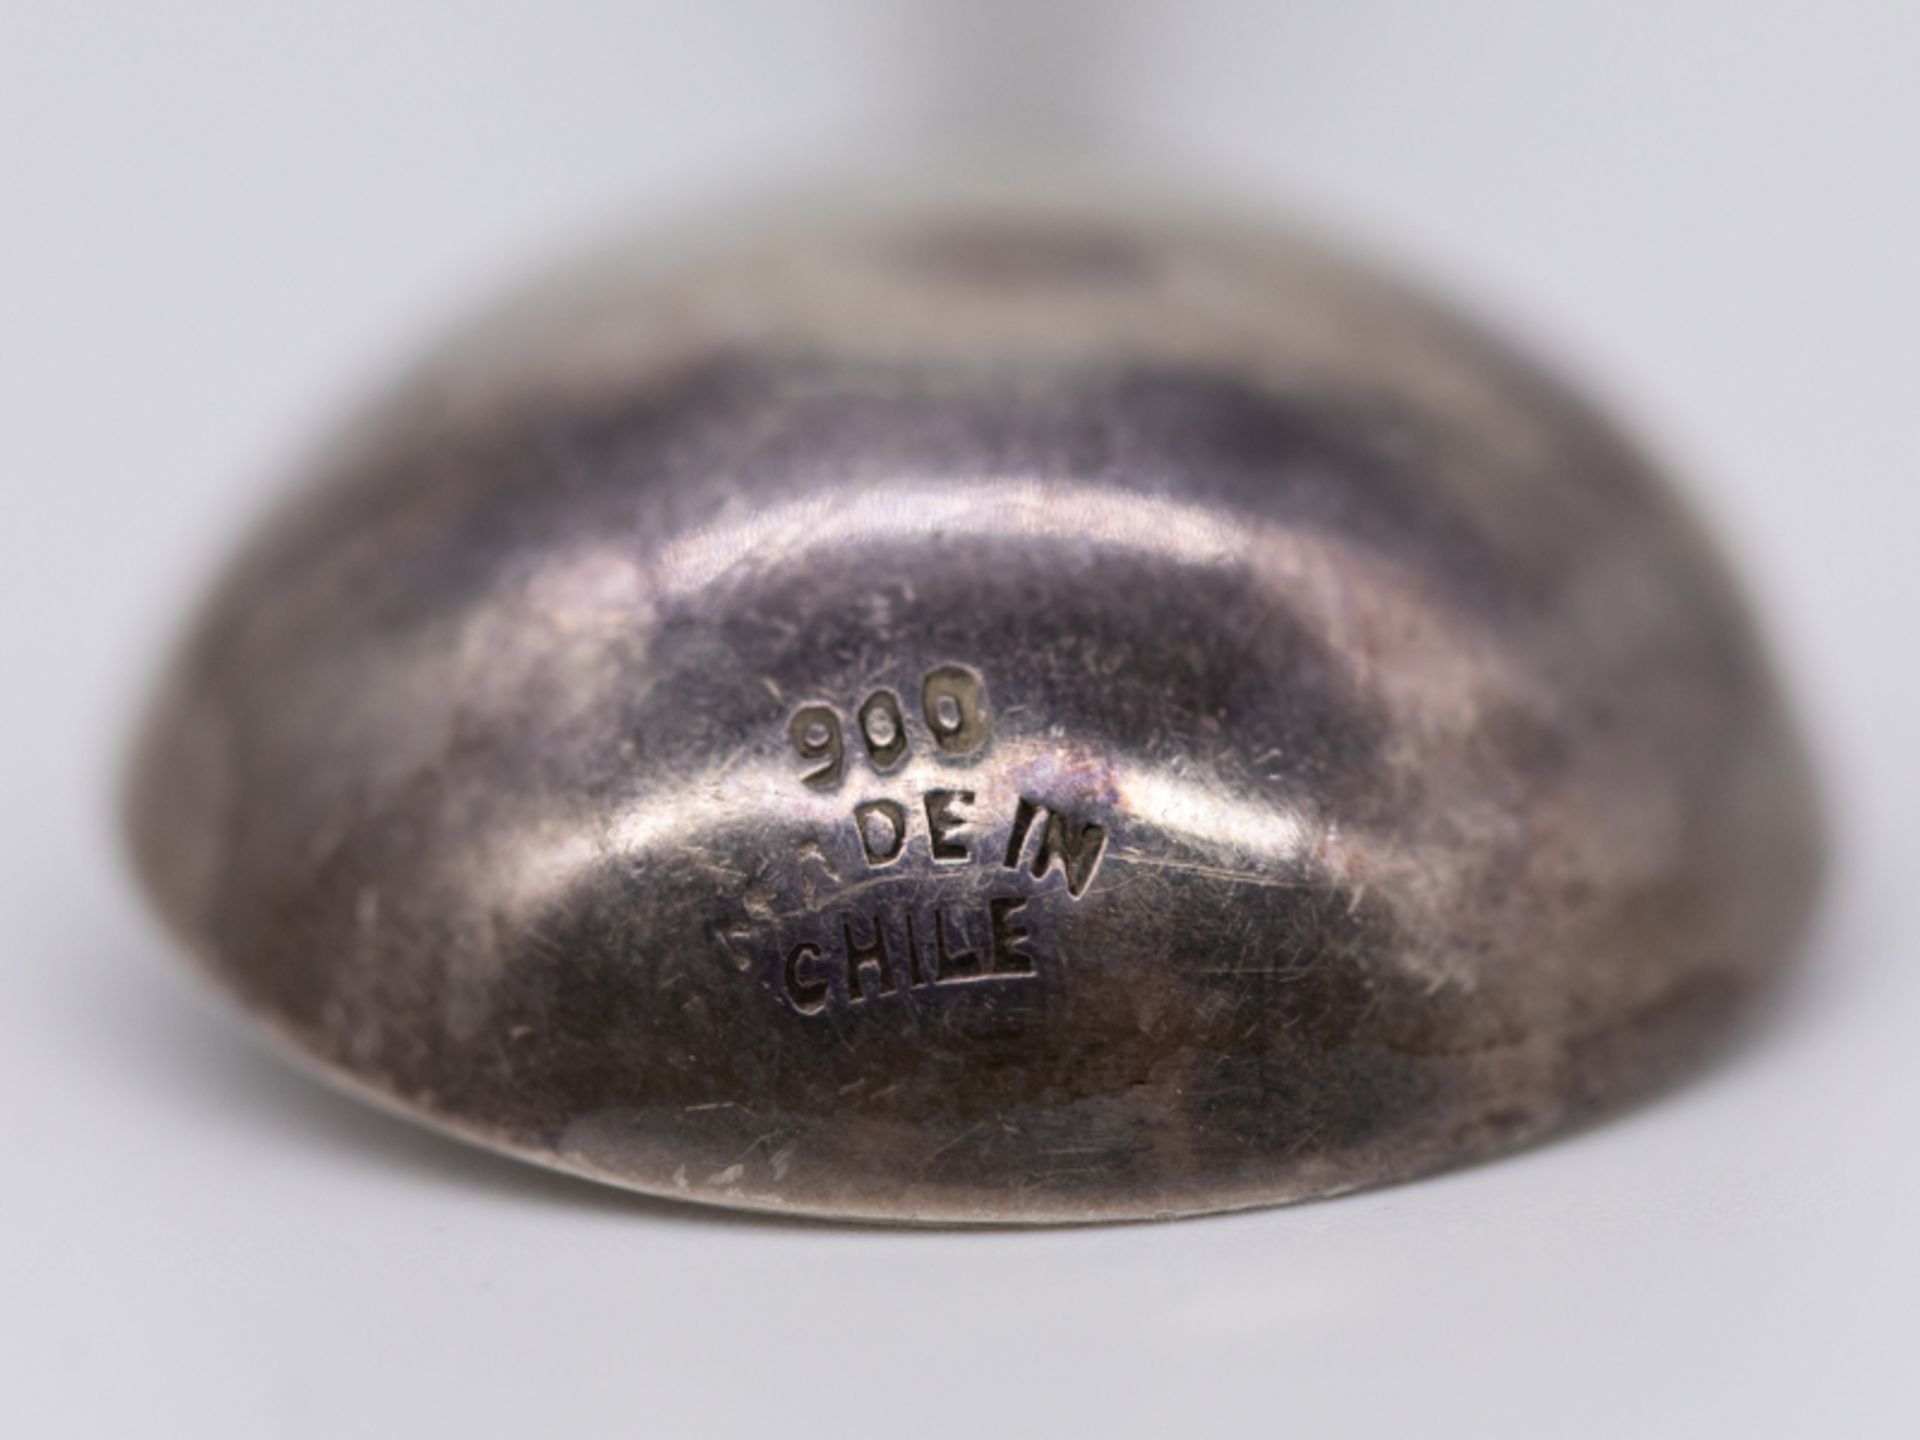 Kleiner ZierlÃ¶ffel mit Lapislazuli-Stein, Chile, 20. Jh. br900/-Silber, Gesamtgewicht ca. 28 g; - Image 3 of 3